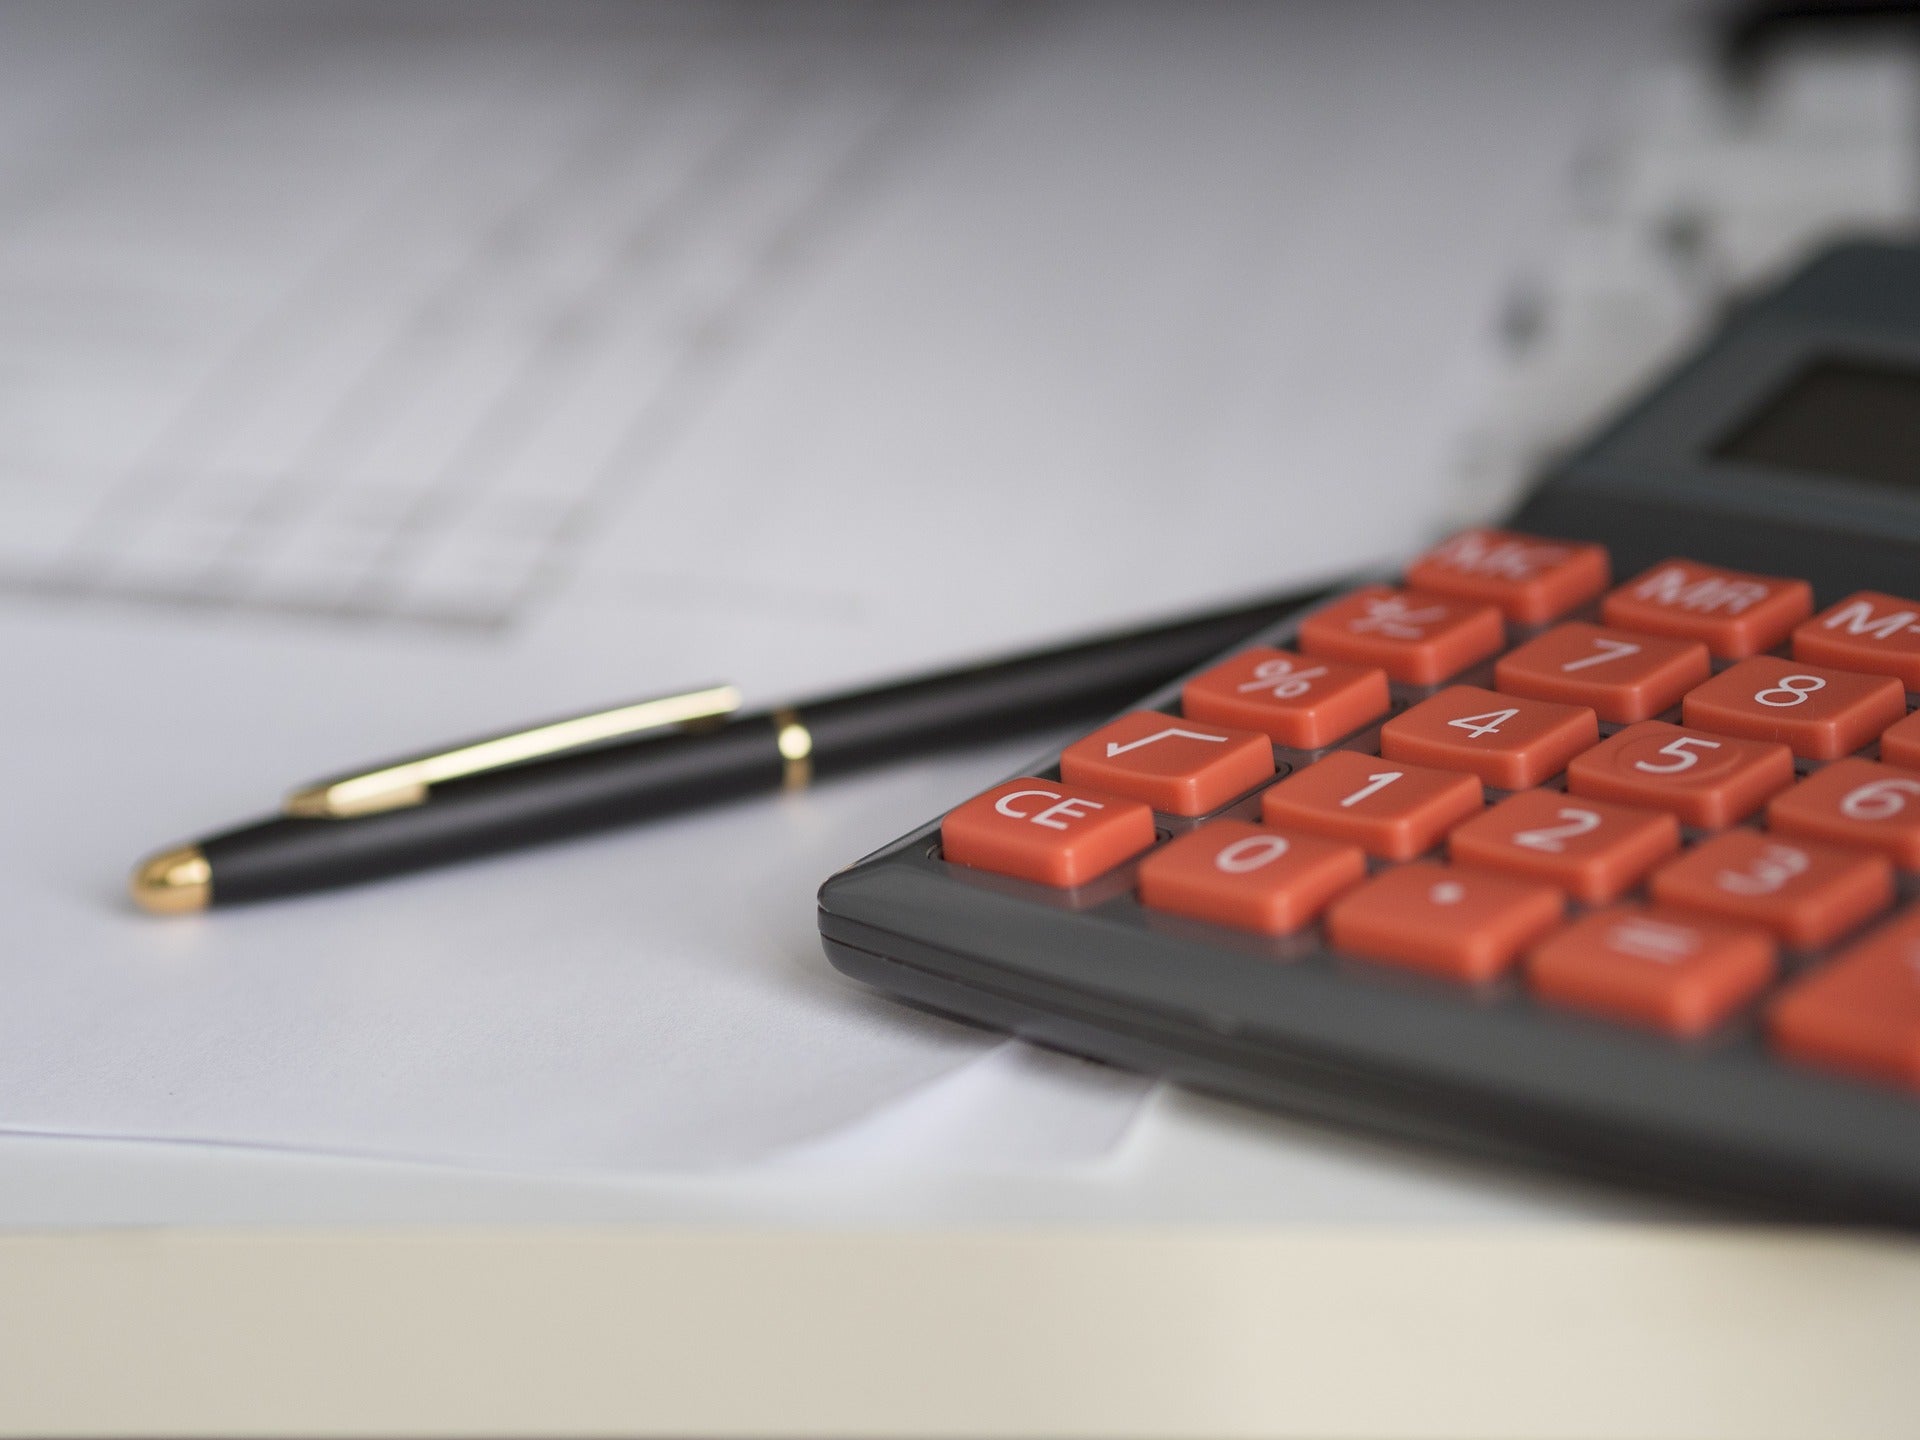 Auf einem Tisch liegen Dokumente sowie ein Taschenrechner mit roten Tasten und ein Kugelschreiber. Nachdem du dein Gewerbe angemeldet hast, folgt ein Fragebogen vom Finanzamt.